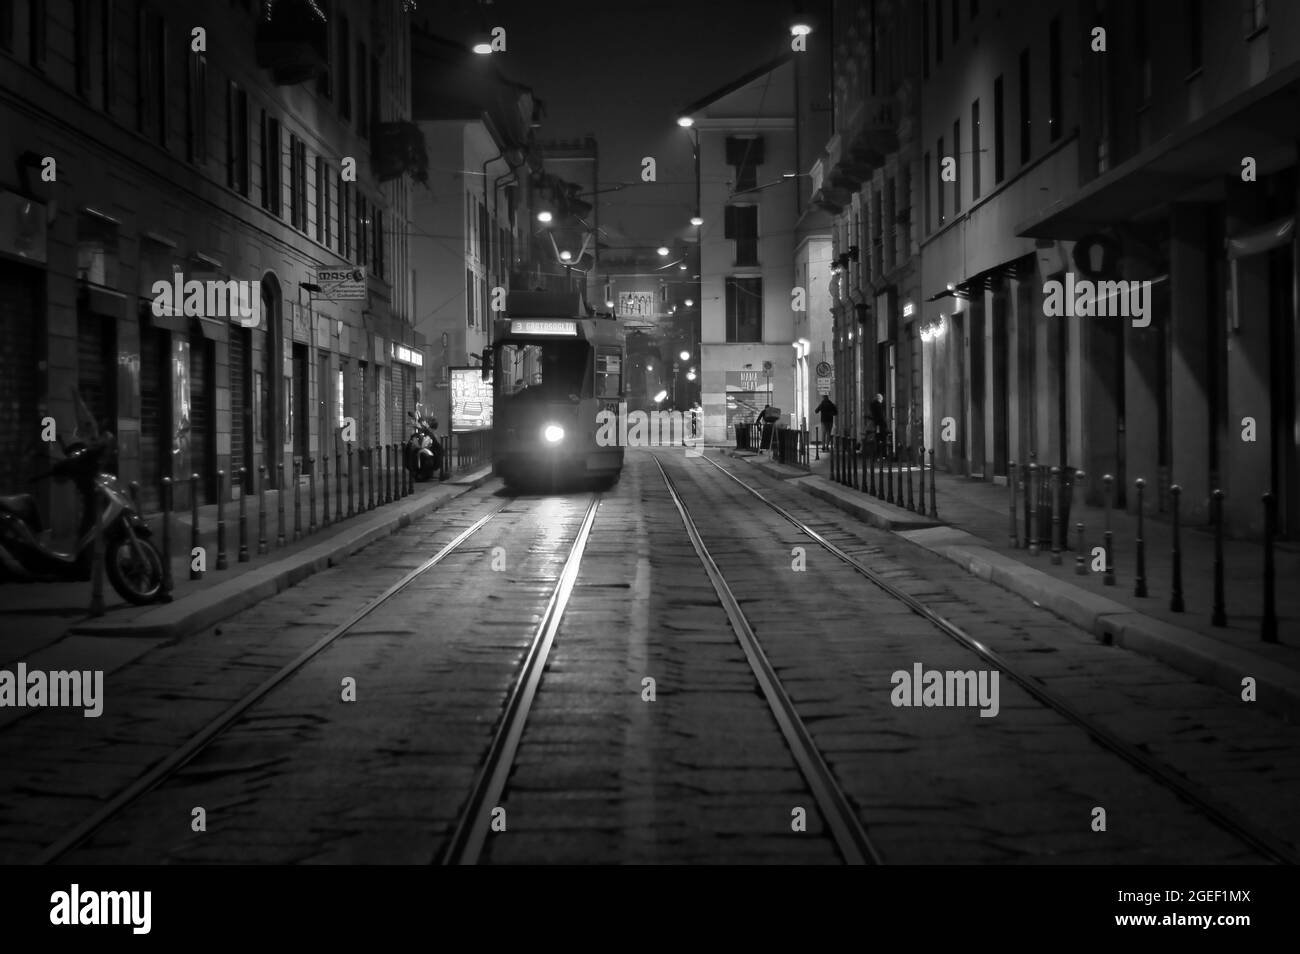 MAILAND, ITALIEN - 19. Dez 2020: Eine Graustufe einer Straßenbahn auf den Schienen bei Nacht in Mailand, Italien Stockfoto